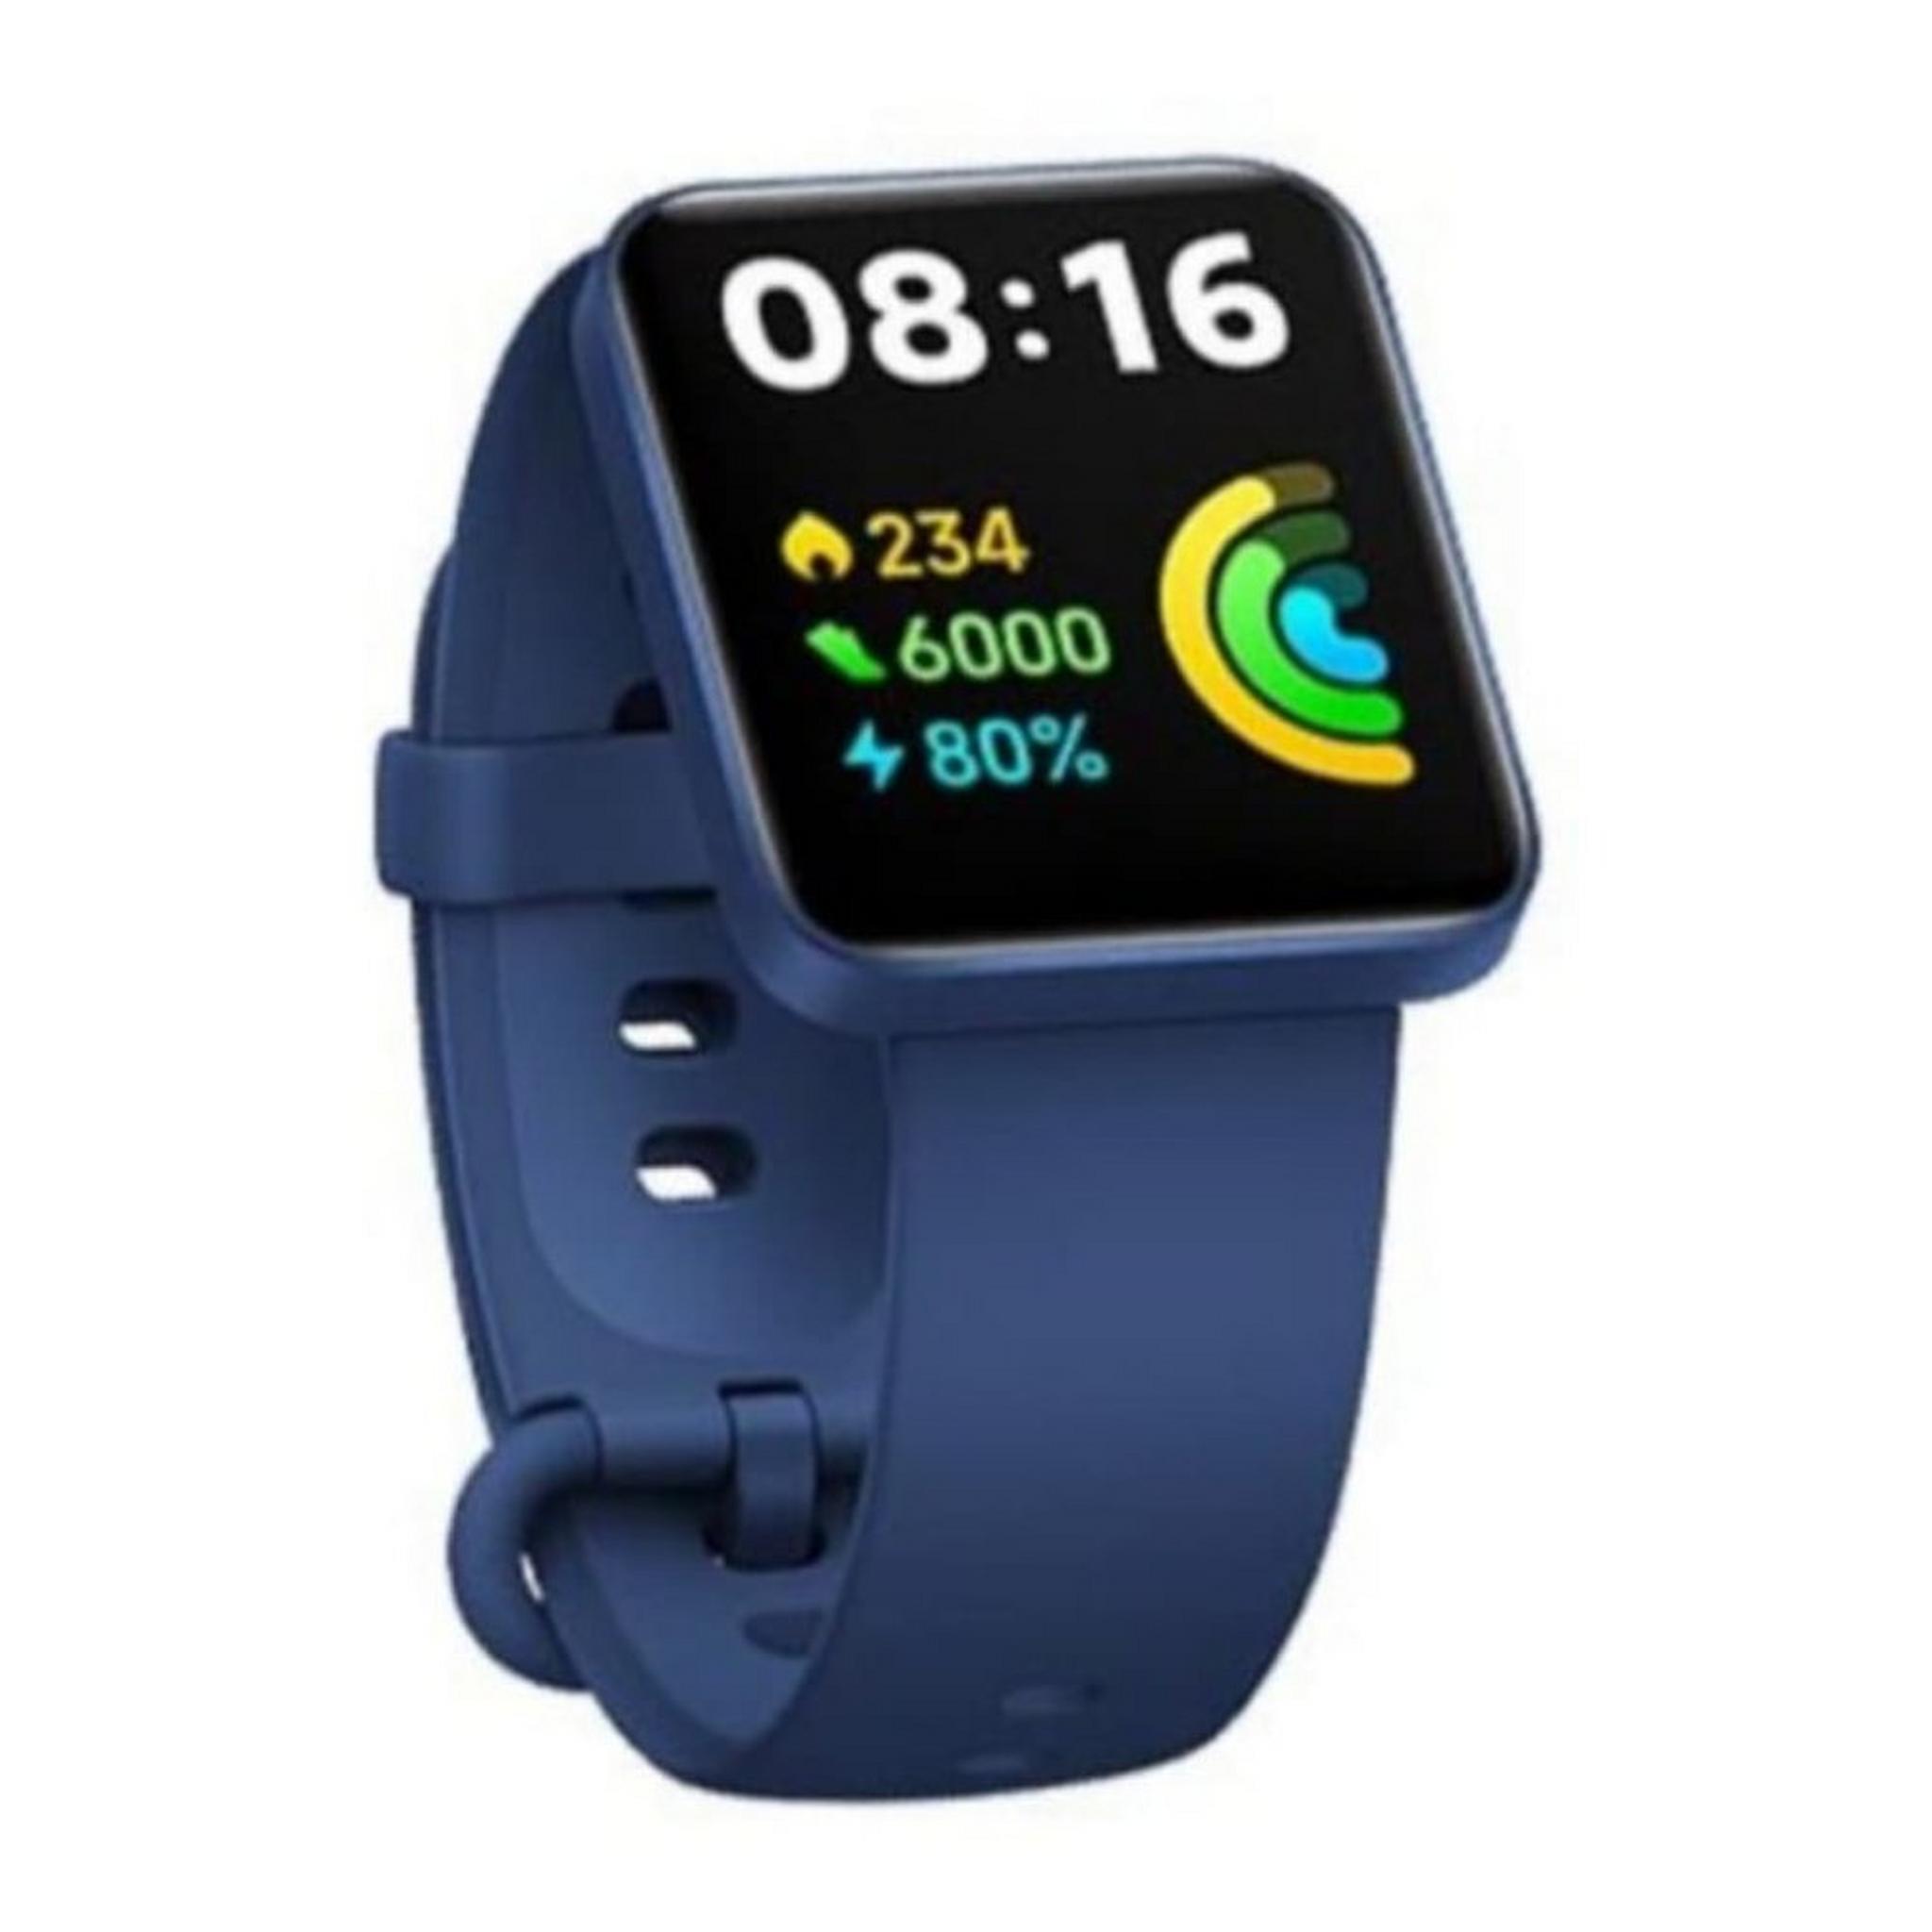 Xiaomi Watch 2 Lite (BHR5440GL) - Blue